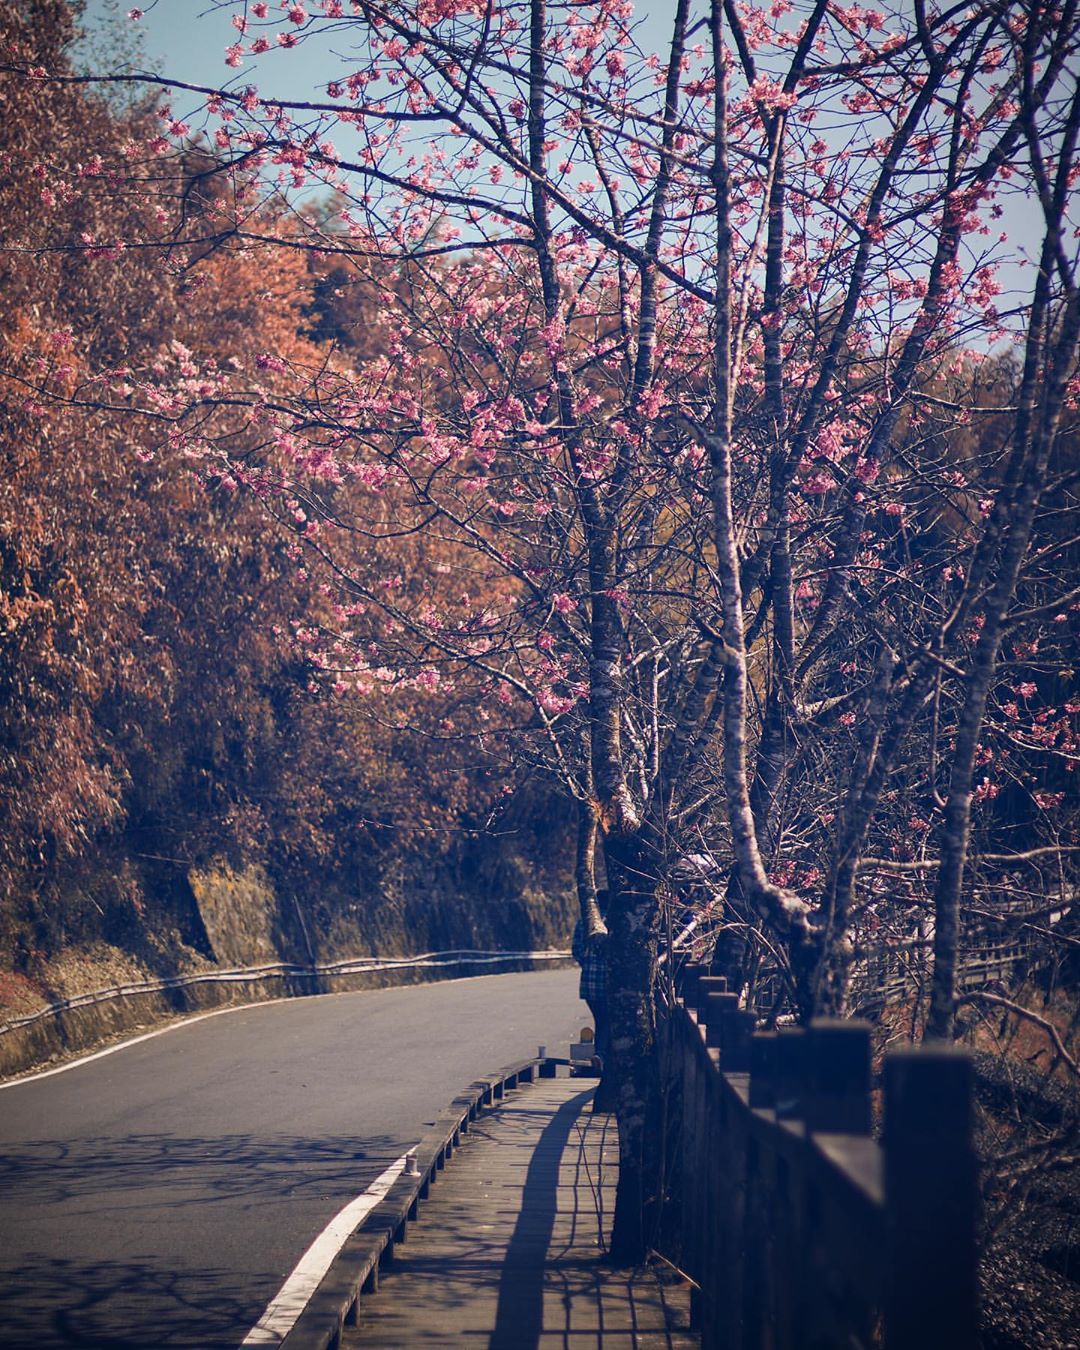 櫻之道的櫻花盛開中下週沒來就有等明年囉-⠀⠀⠀⠀⠀⠀⠀⠀⠀⠀⠀感謝 @etienne.photographie 分享的美照-⠀⠀⠀...